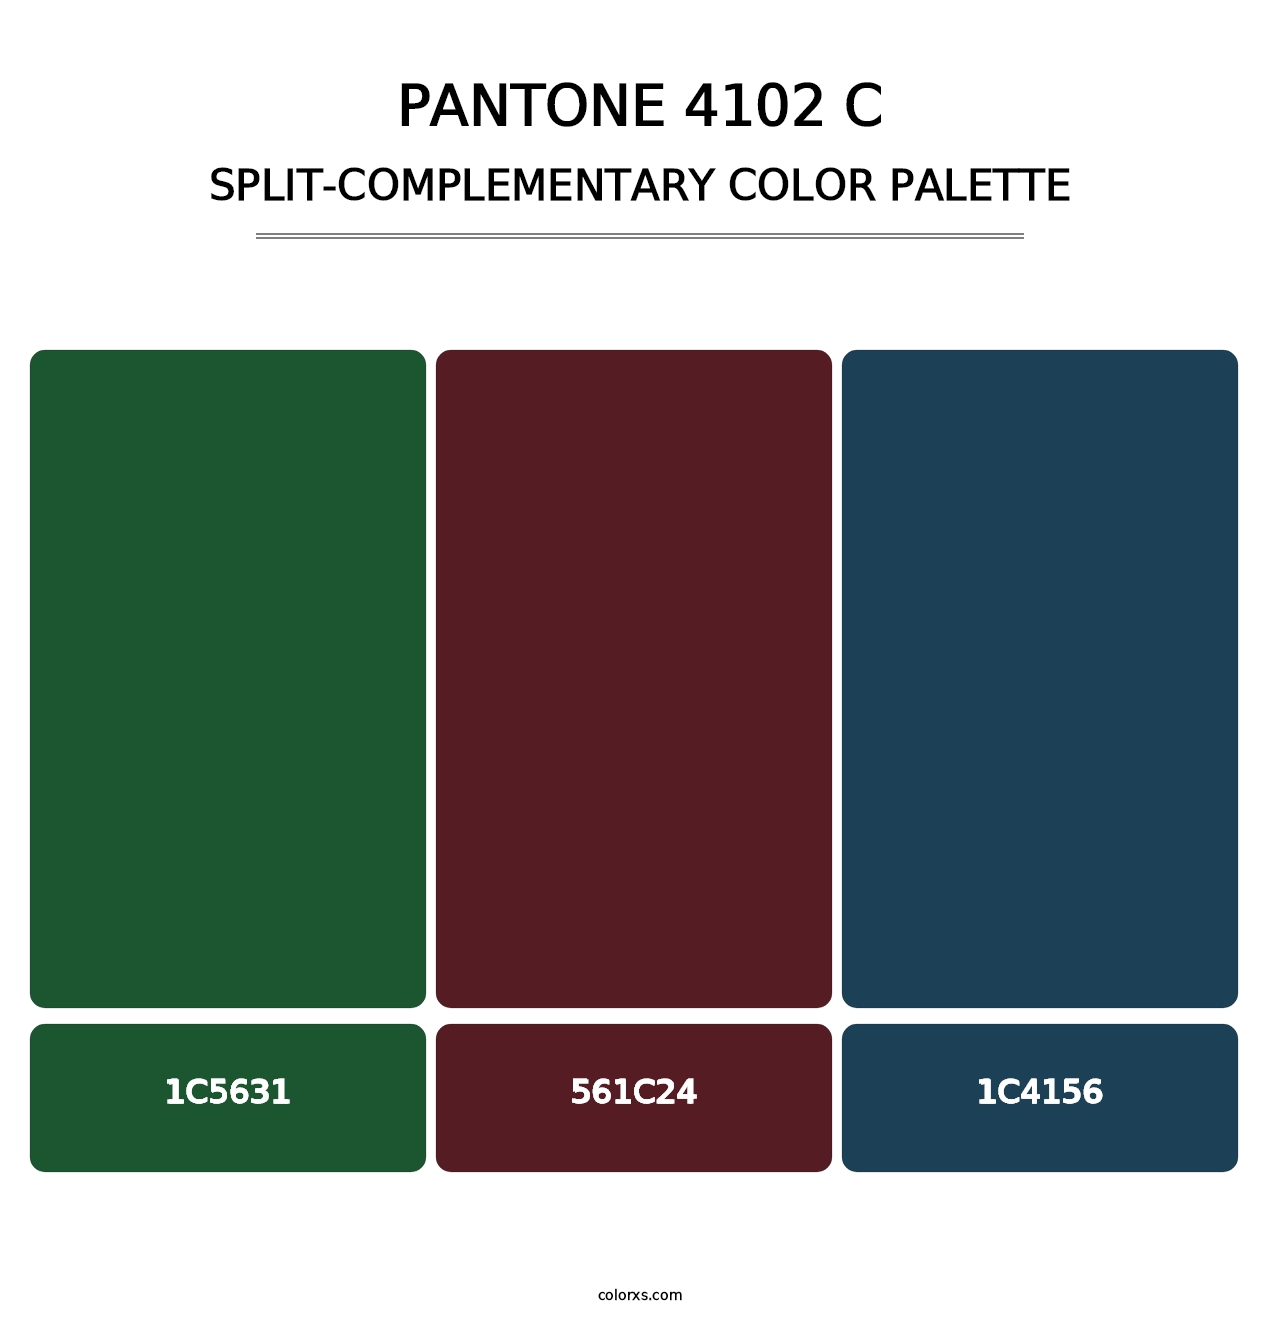 PANTONE 4102 C - Split-Complementary Color Palette